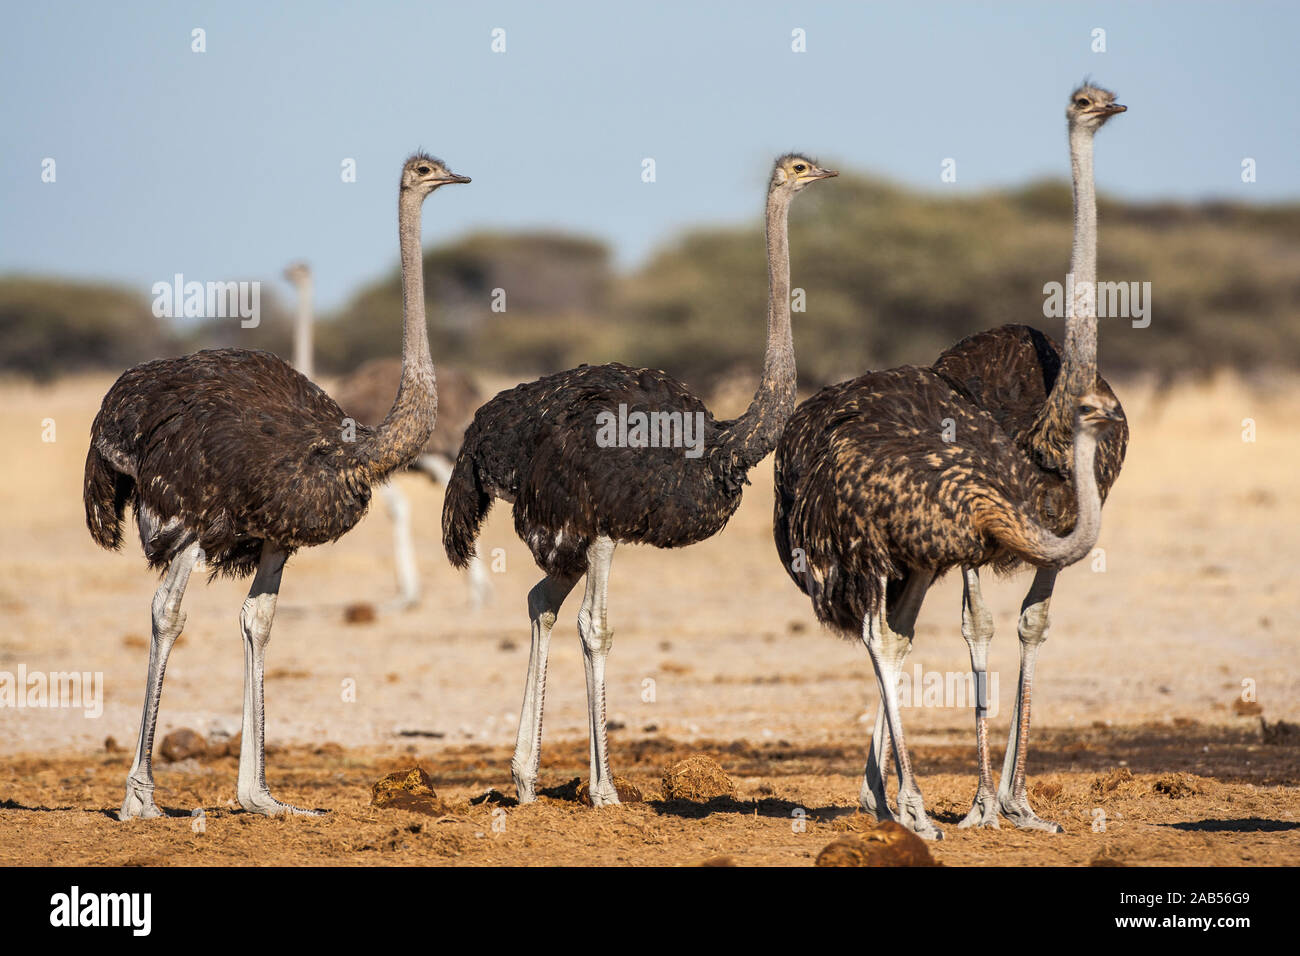 Afrikanische Strauße (Struthio camelus) Banque D'Images